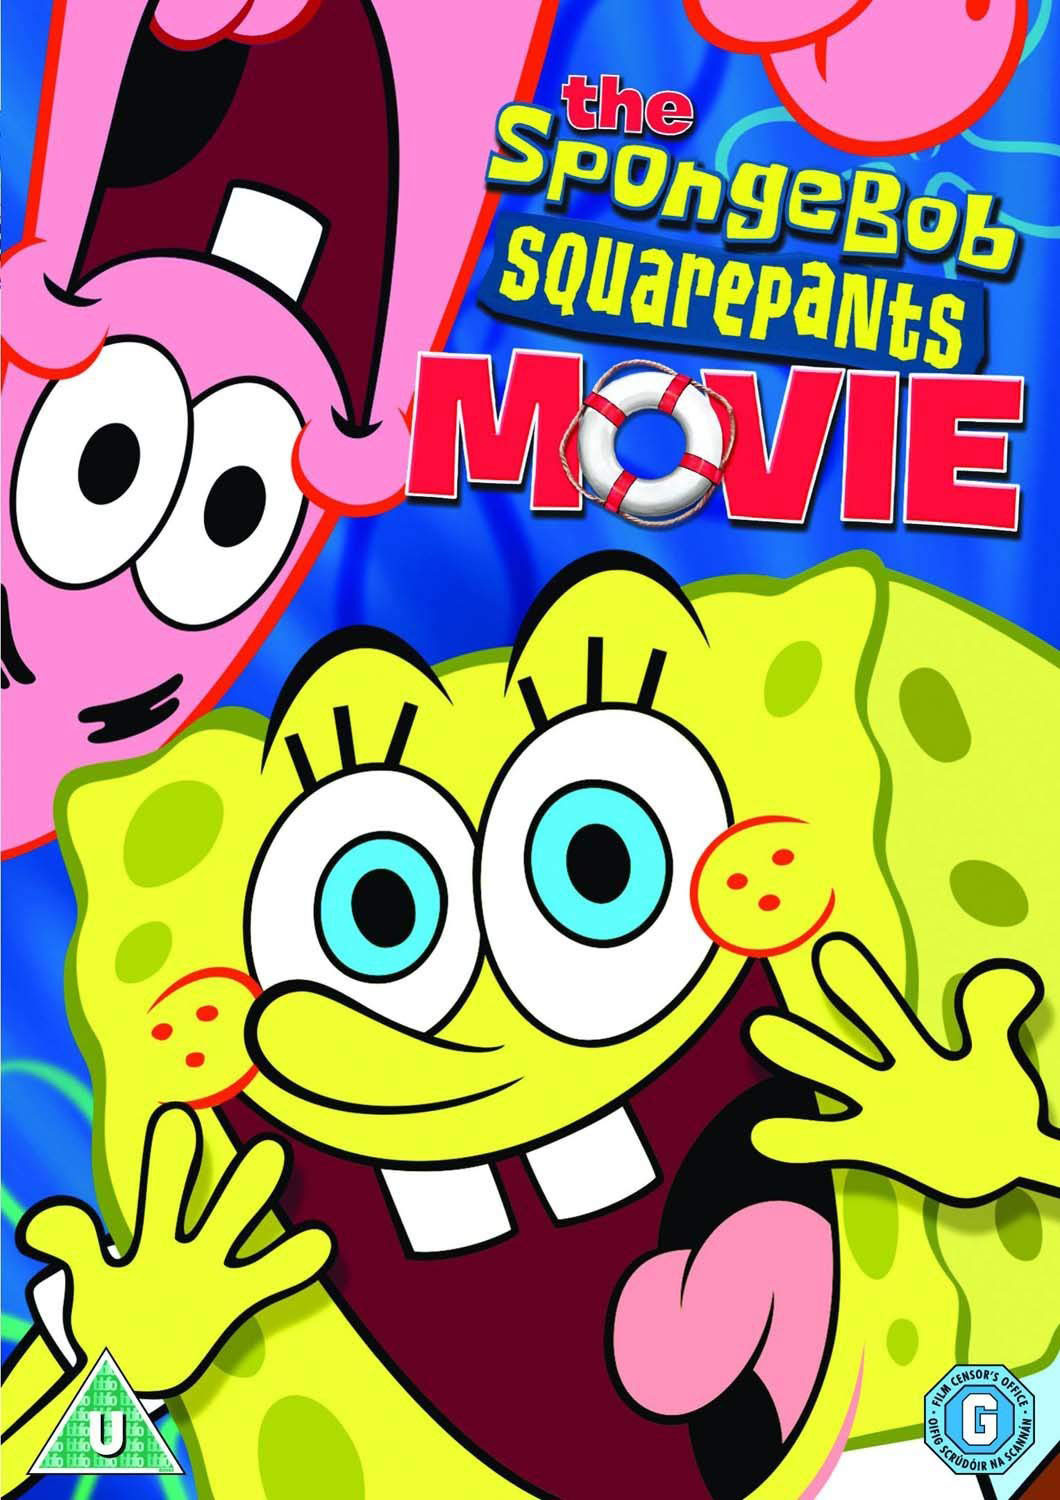 Image The SpongeBob SquarePants Movie DVD UK Coverjpg